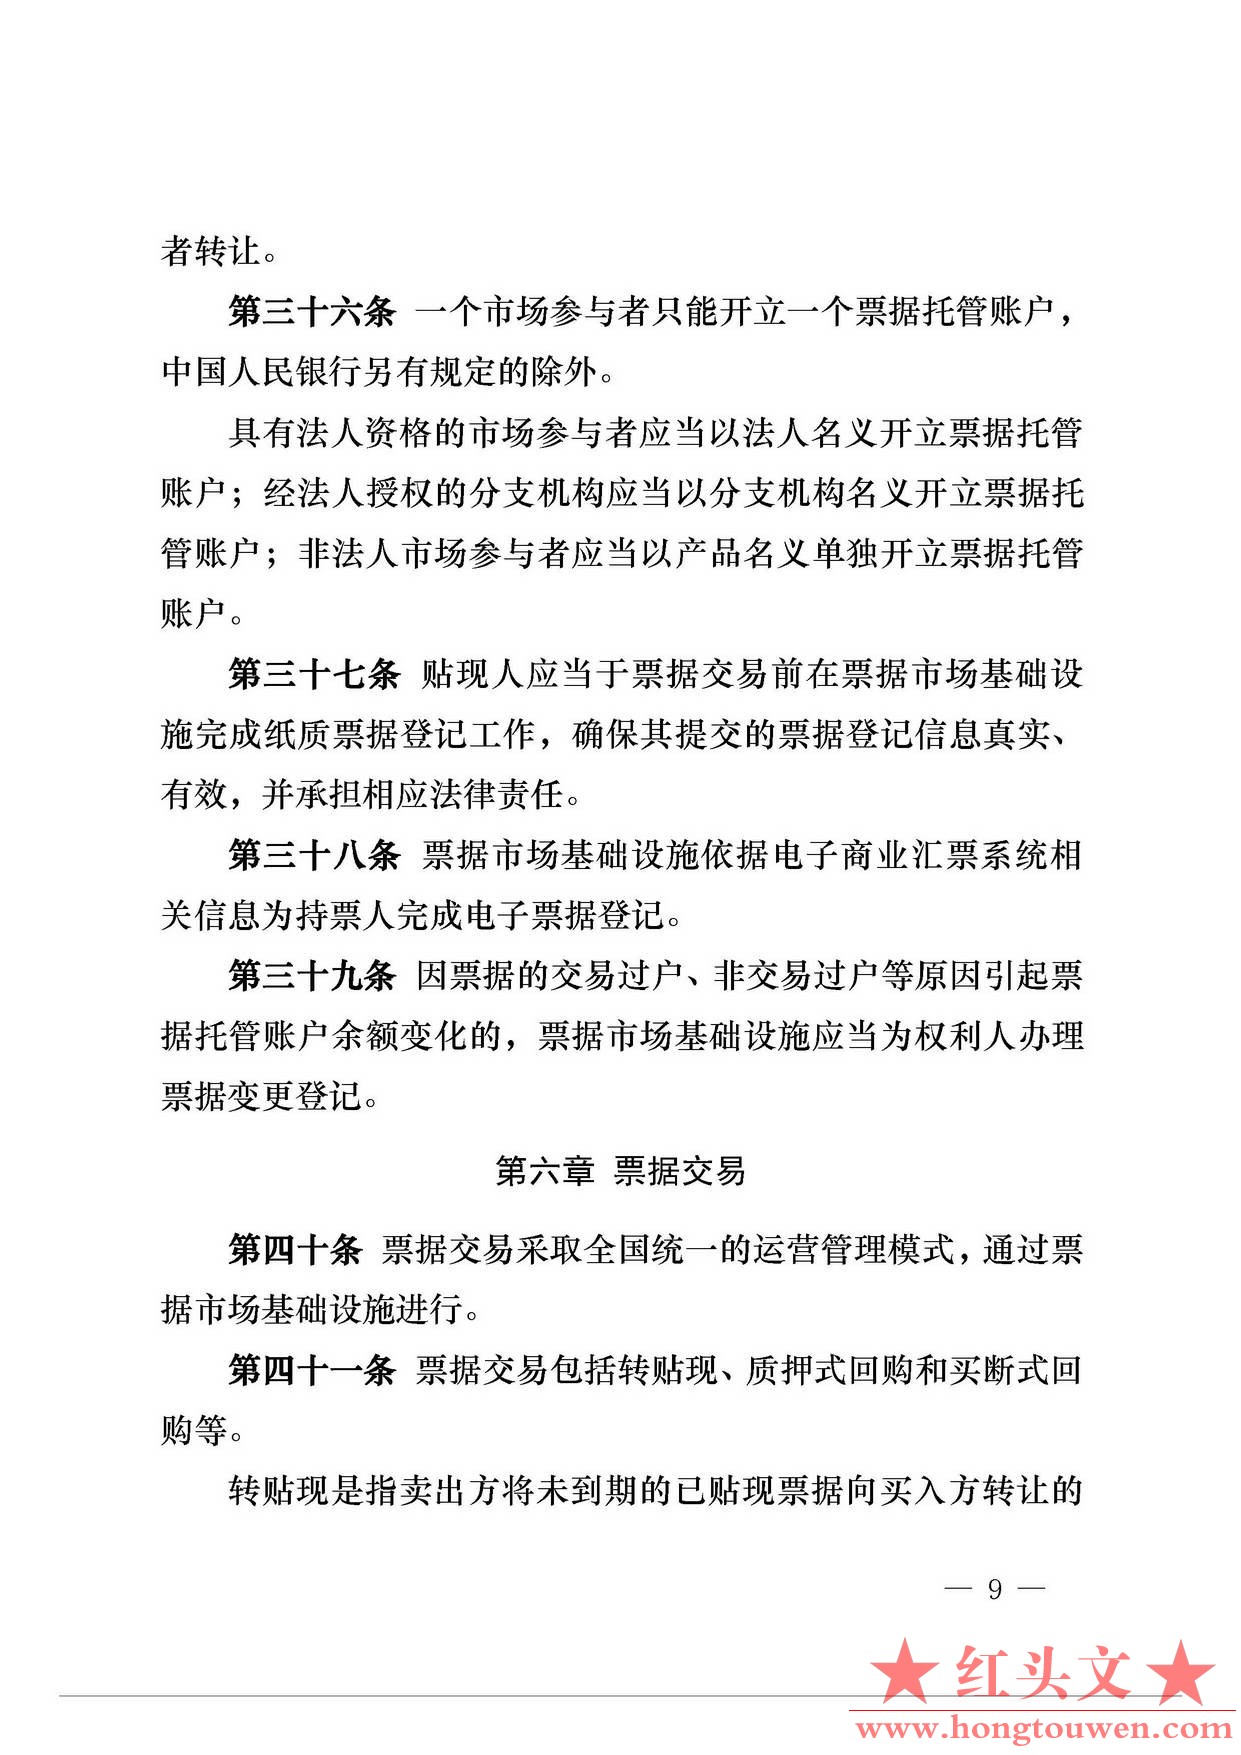 中国人民银行公告[2016]29号-票据交易管理办法_页面_09.jpg